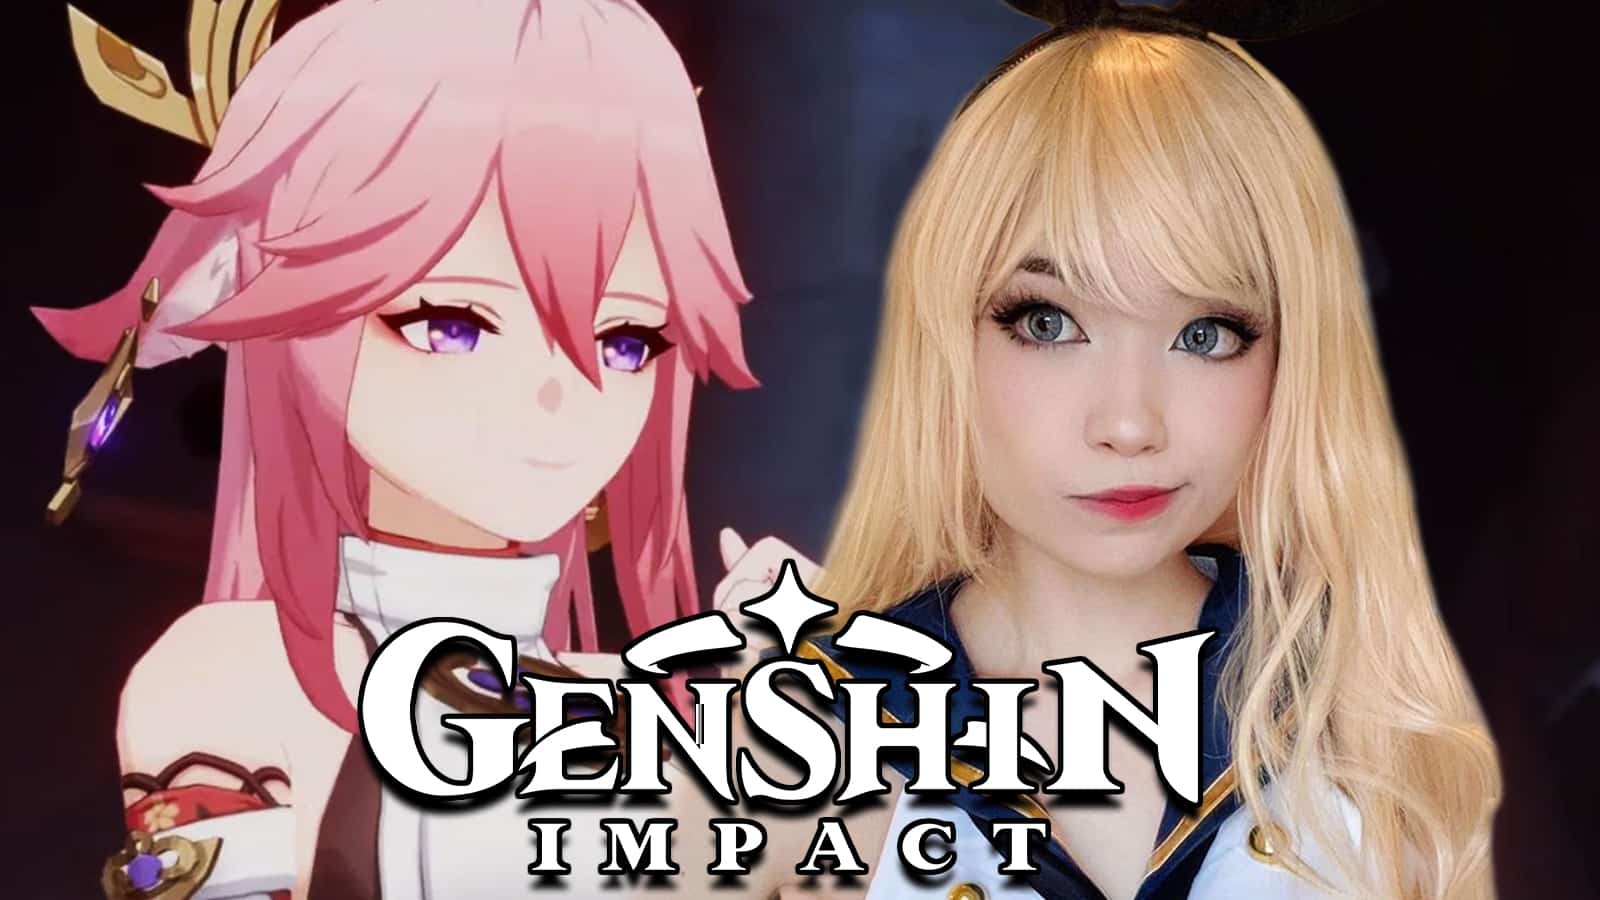 Genshin Impact Yae Miko next to Twitch streamer Emiru screenshot.